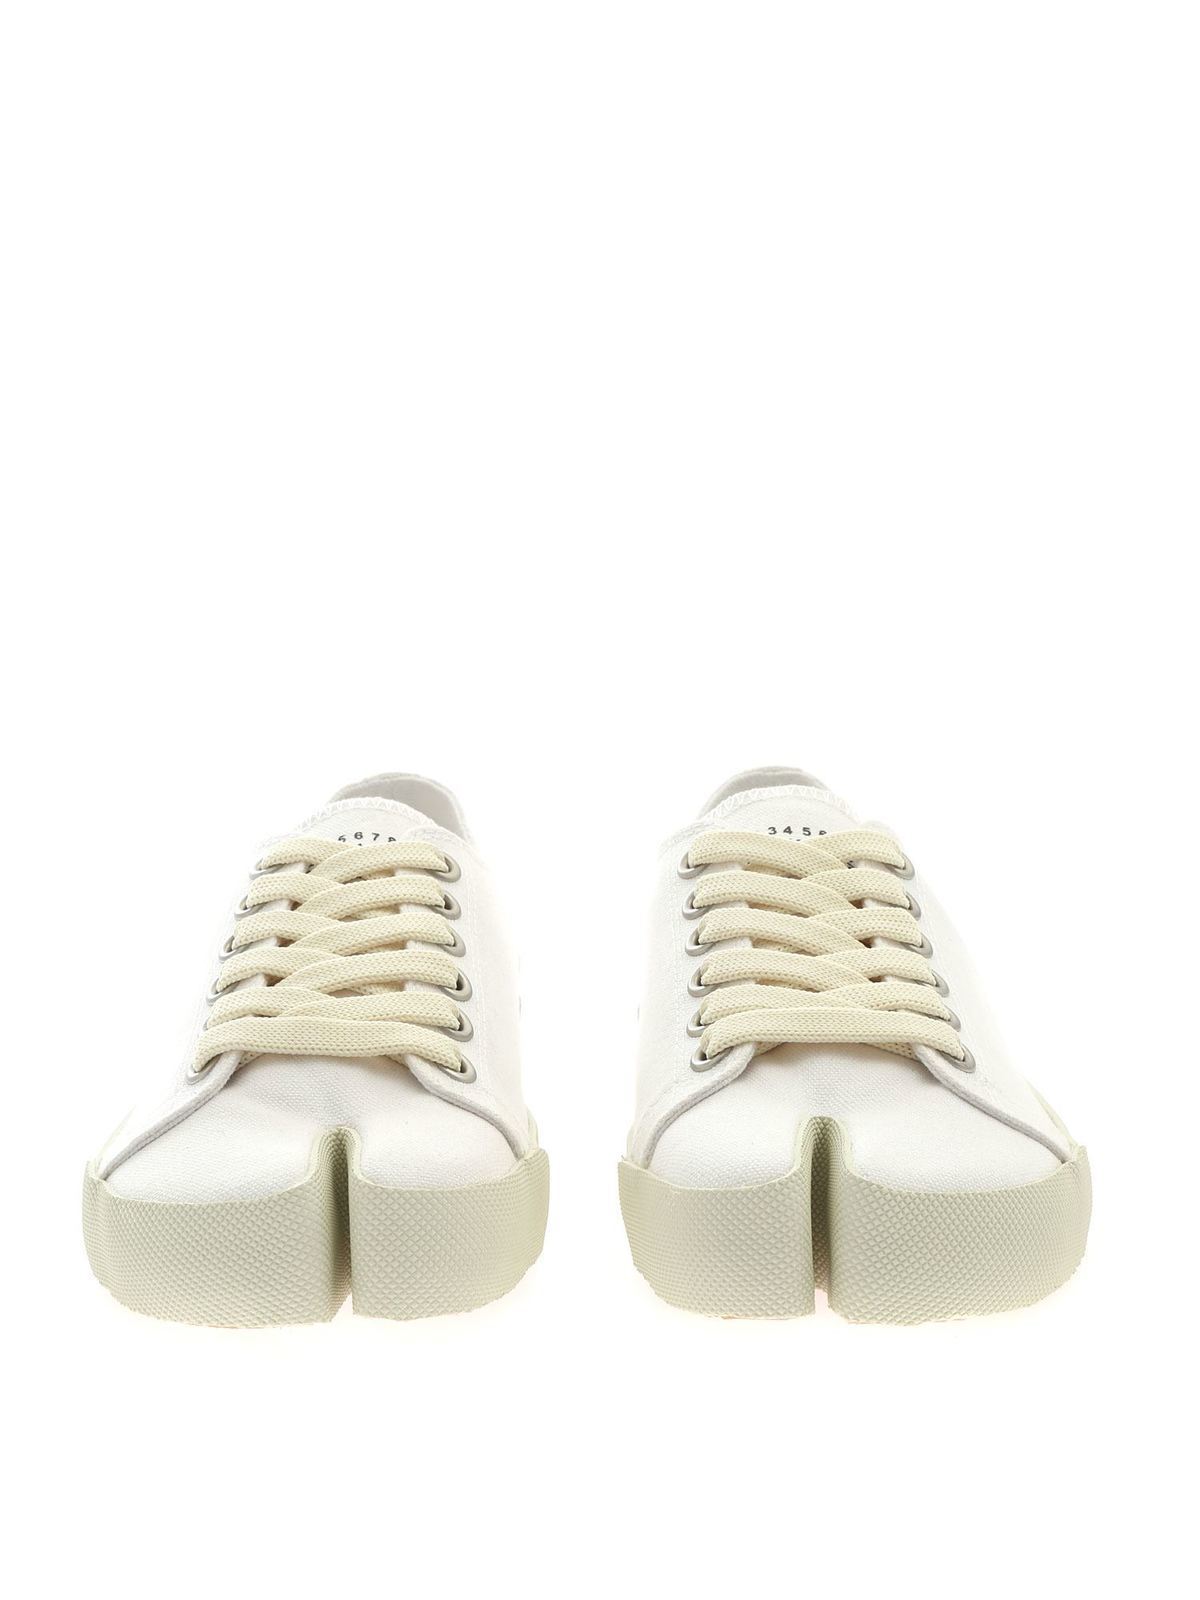 margiela white shoes